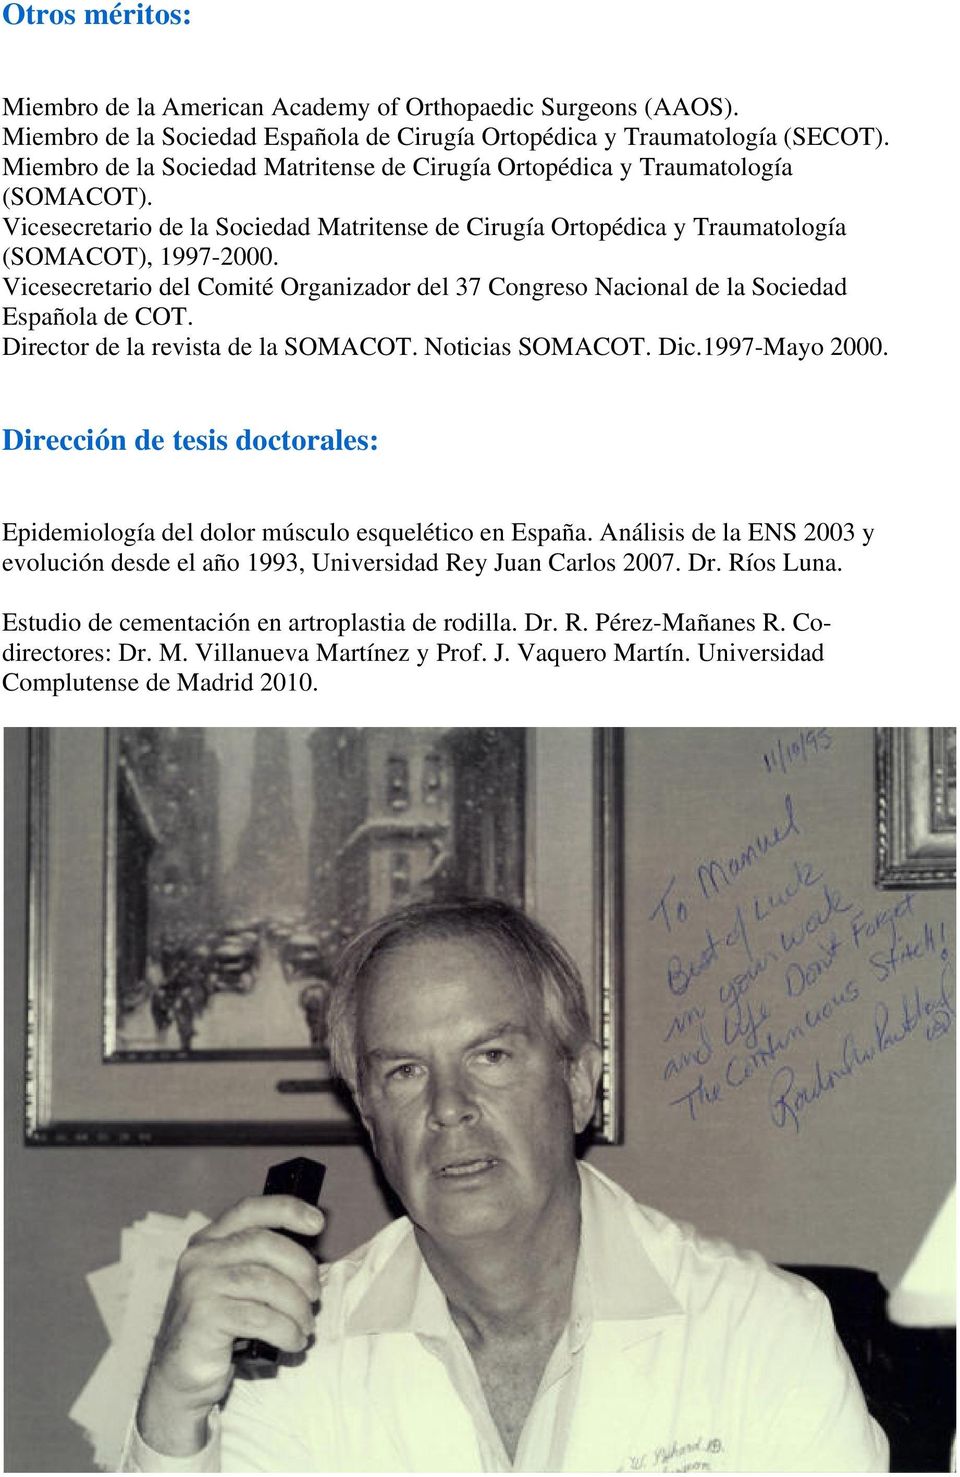 Vicesecretario del Comité Organizador del 37 Congreso Nacional de la Sociedad Española de COT. Director de la revista de la SOMACOT. Noticias SOMACOT. Dic.1997-Mayo 2000.